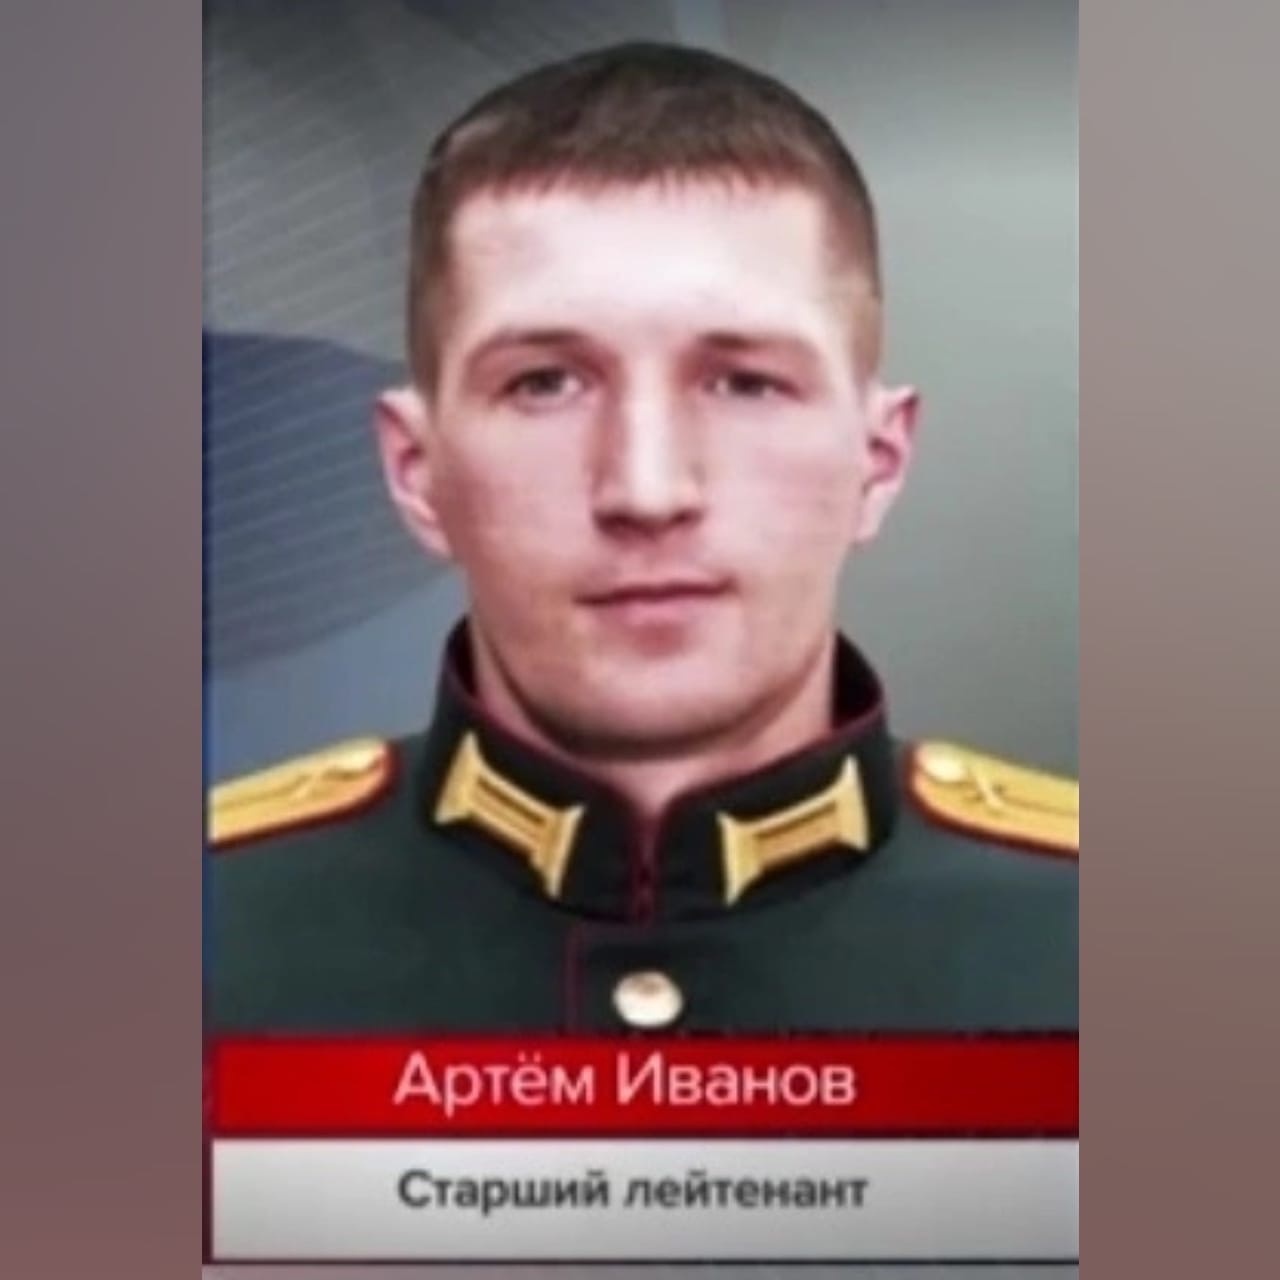 Смолянин сбил украинскую ракету и беспилотники в ходе спецоперации по защите Донбасса